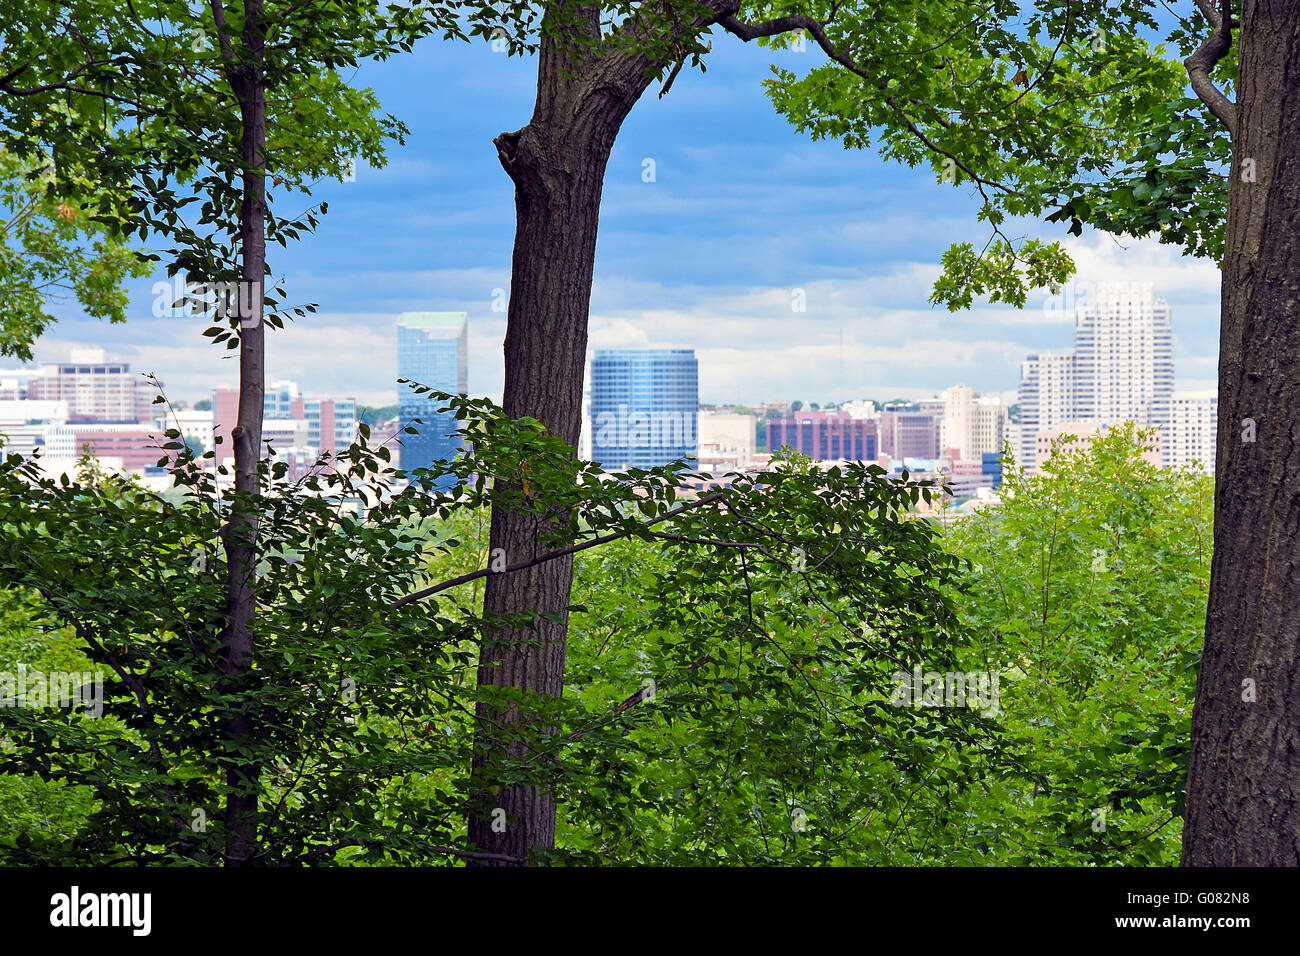 Grand Rapids, Michigan City skyline vue à travers le feuillage des arbres d'été luxuriant. Banque D'Images